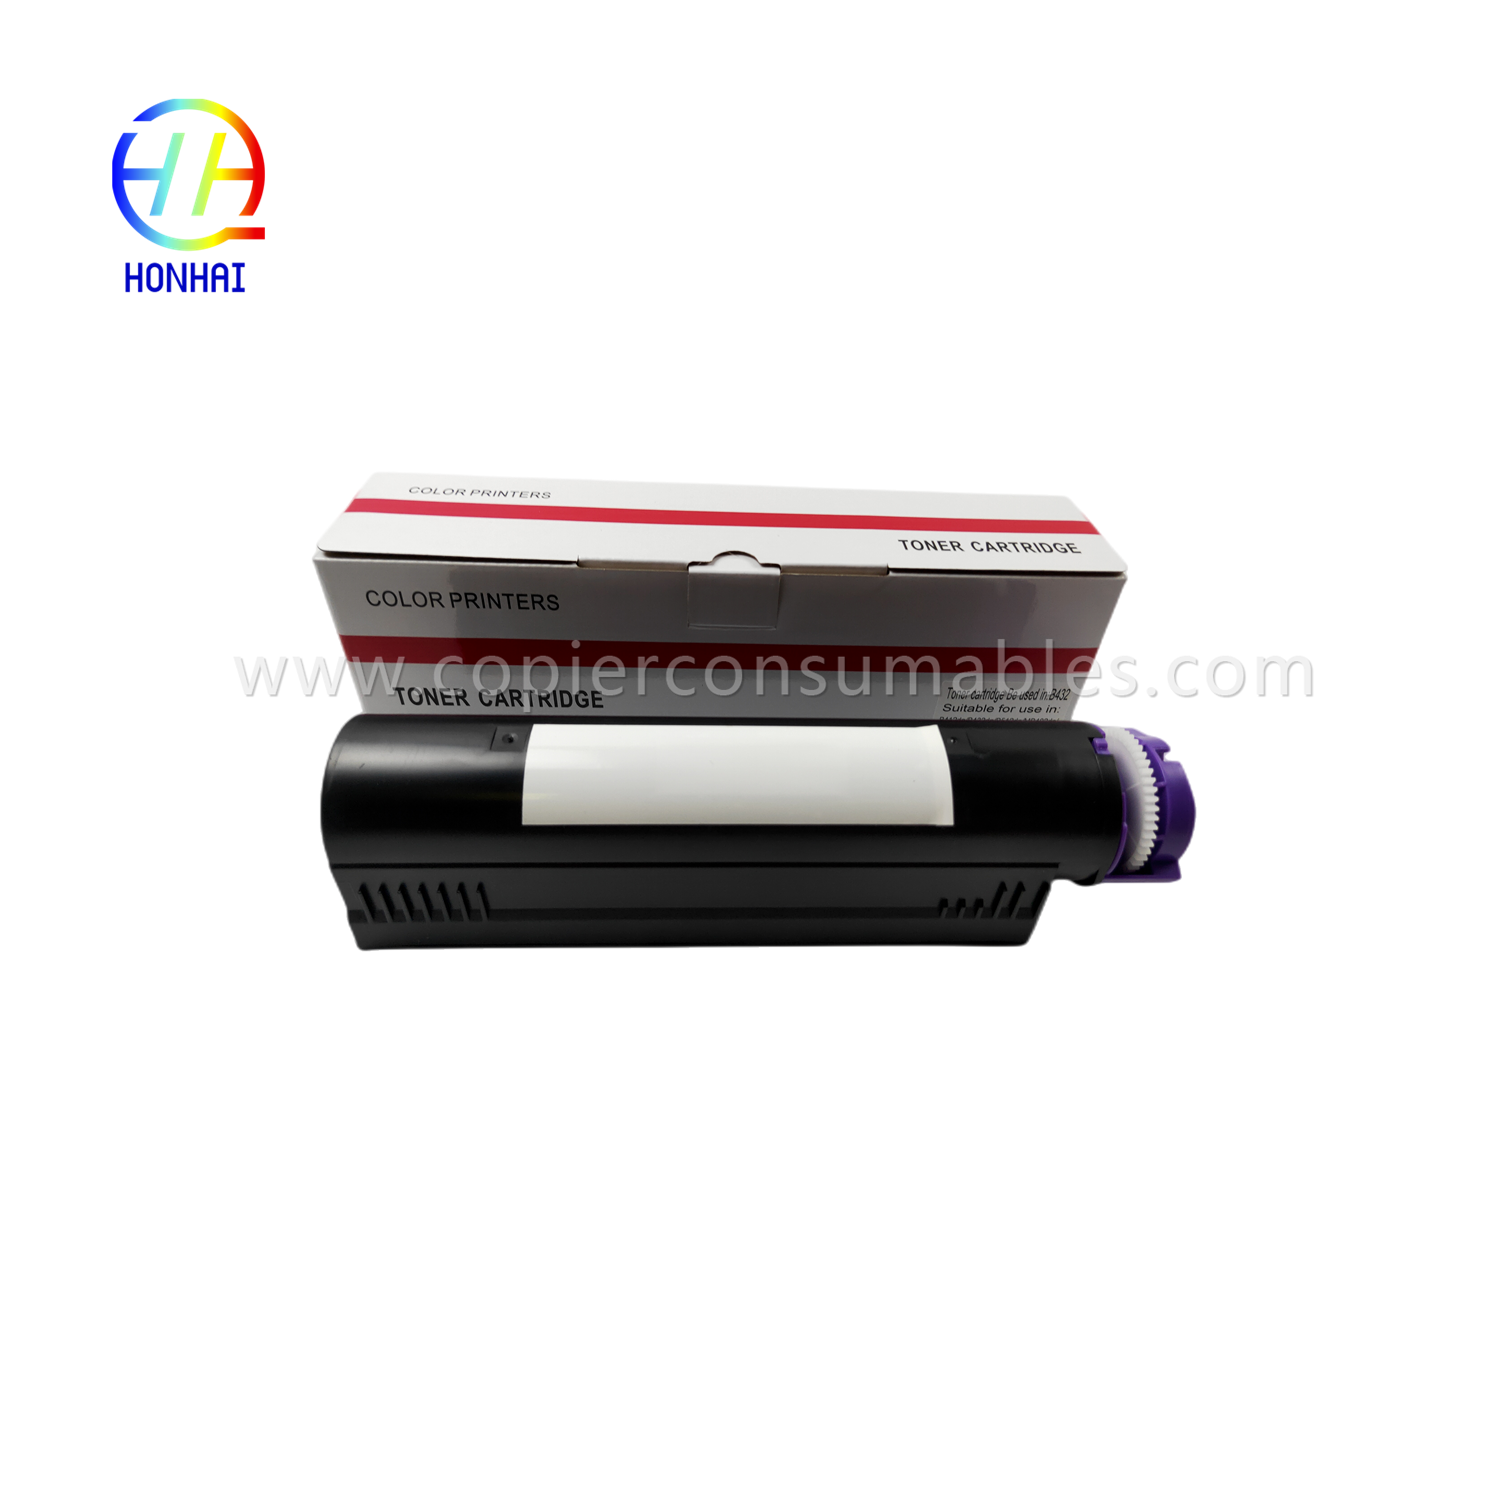 Toner Cartridge for OKI B412 B432 B512 MB472 MB492 MB562 45807105